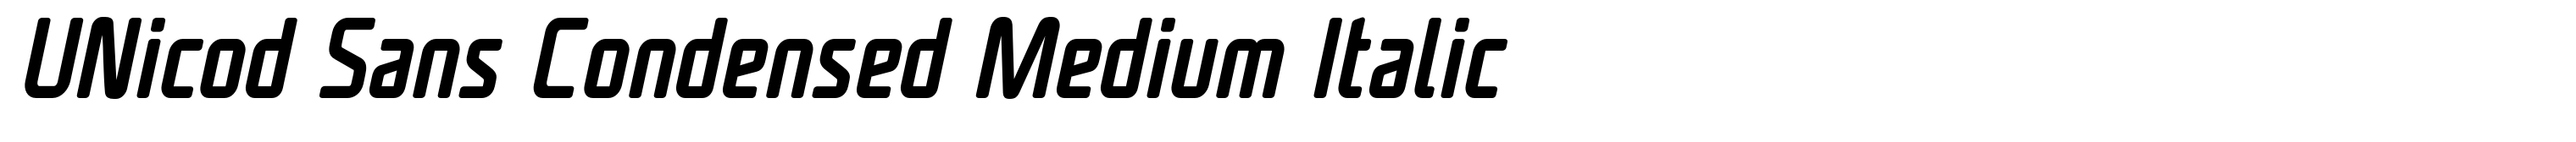 UNicod Sans Condensed Medium Italic